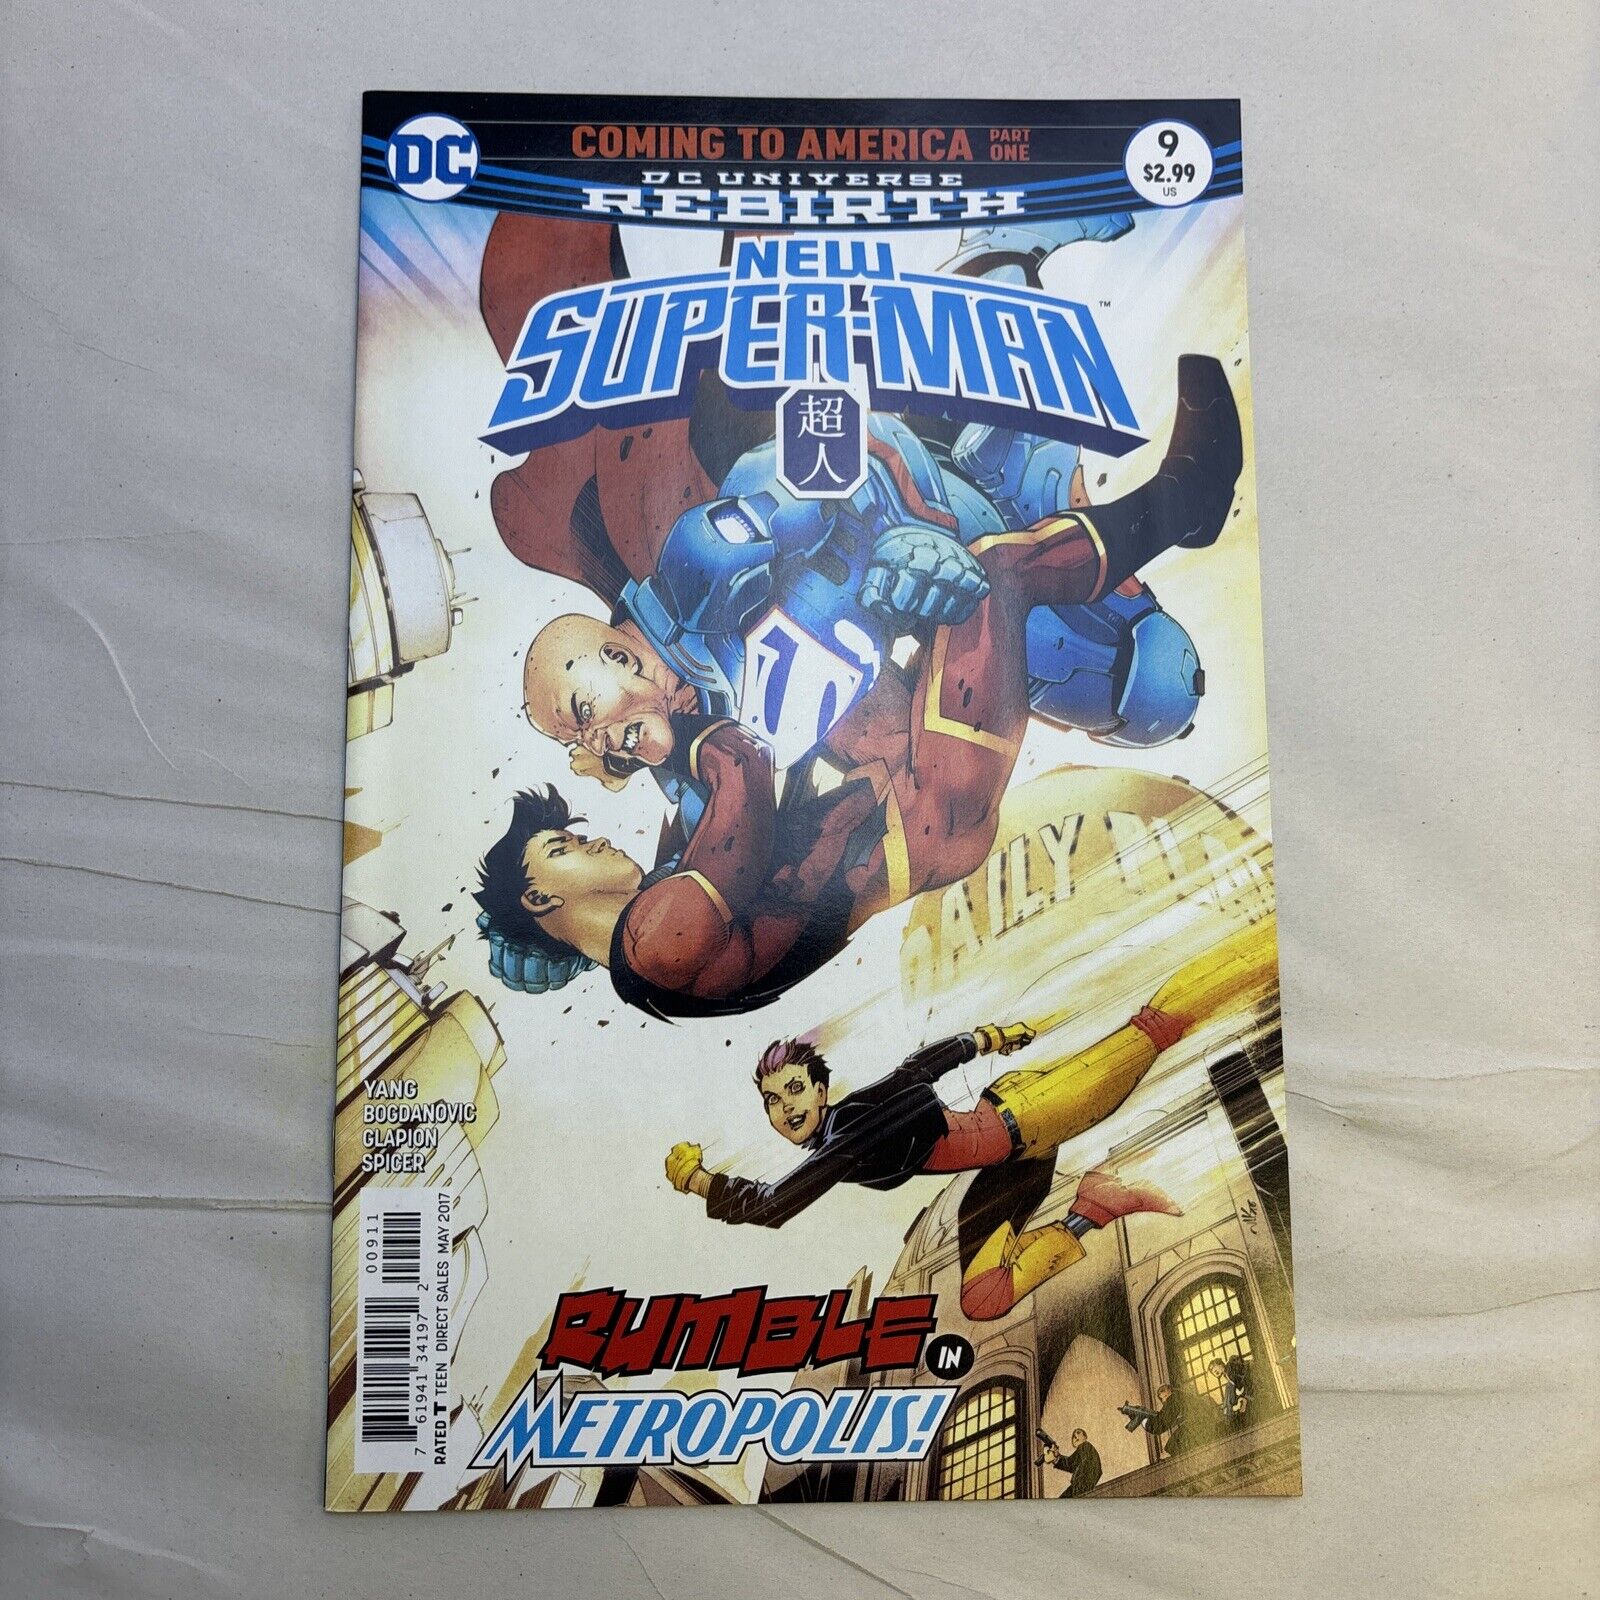 New Super-Man #9 (DC Comics May 2017)